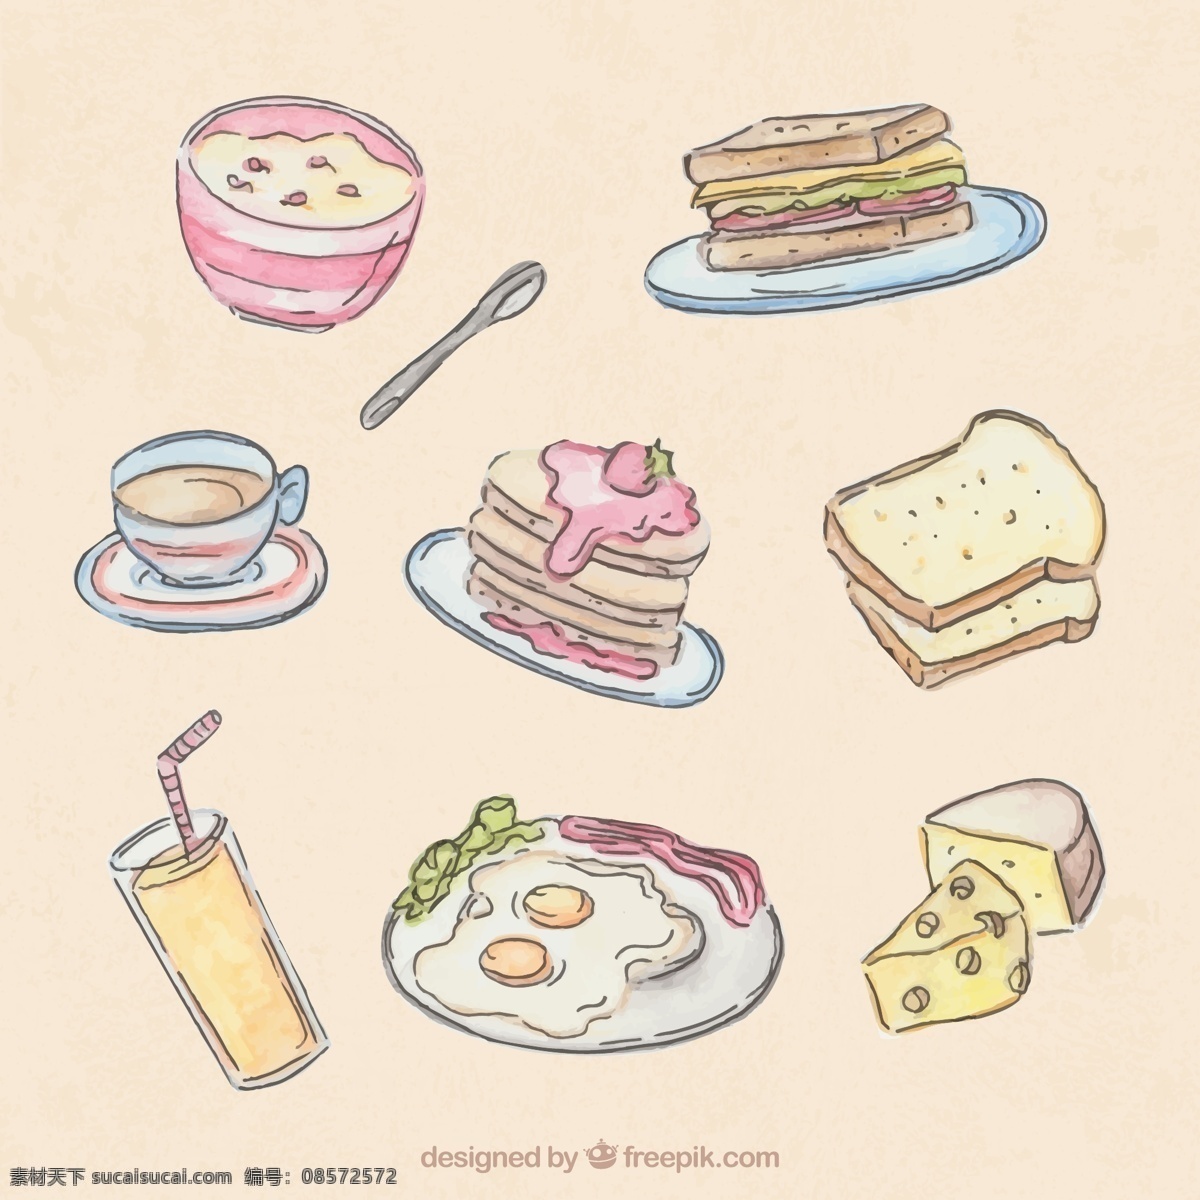 款 素色 彩绘 早餐 食物 矢量 燕麦 三明治 咖啡 三角蛋糕 面包片 橙汁 煎鸡蛋 奶酪 松饼 草莓 矢量图